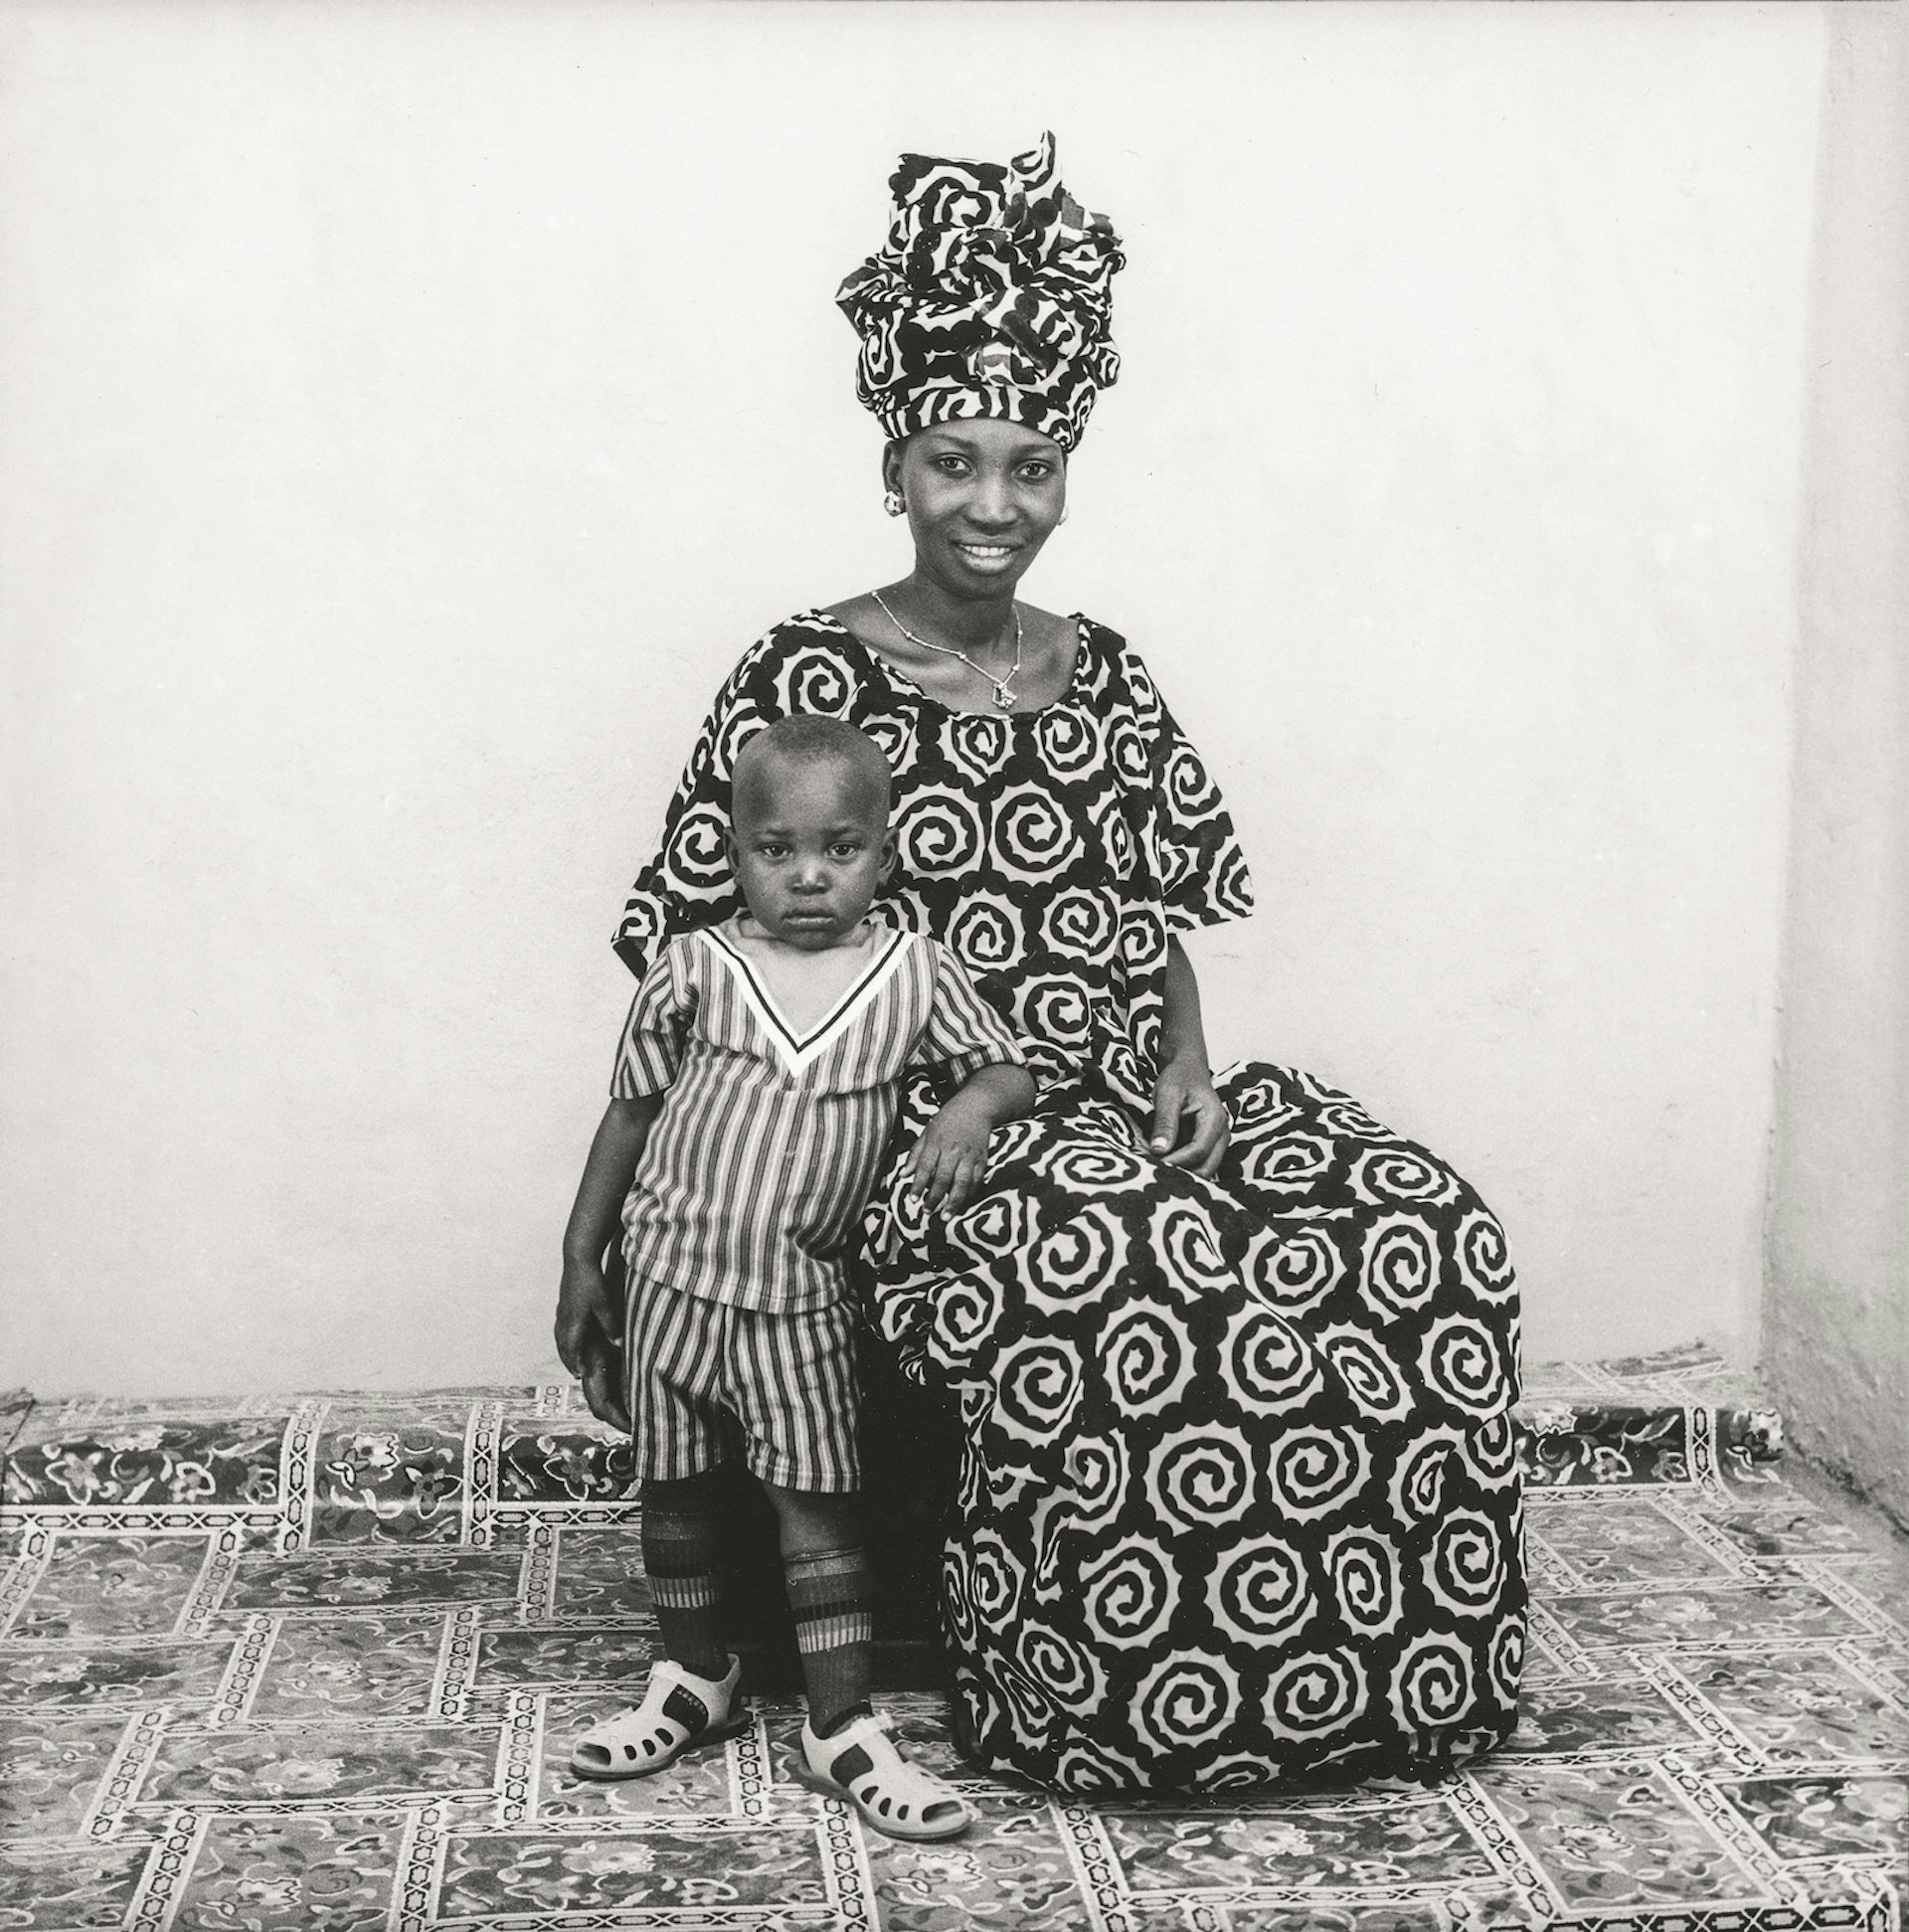 1973. Collection Fondation Cartier pour l’art contemporain, Paris © Malick Sidibé Extract from Mali Twist (Éditions Xavier Barral, Fondation Cartier pour l’art contemporain, 2017)